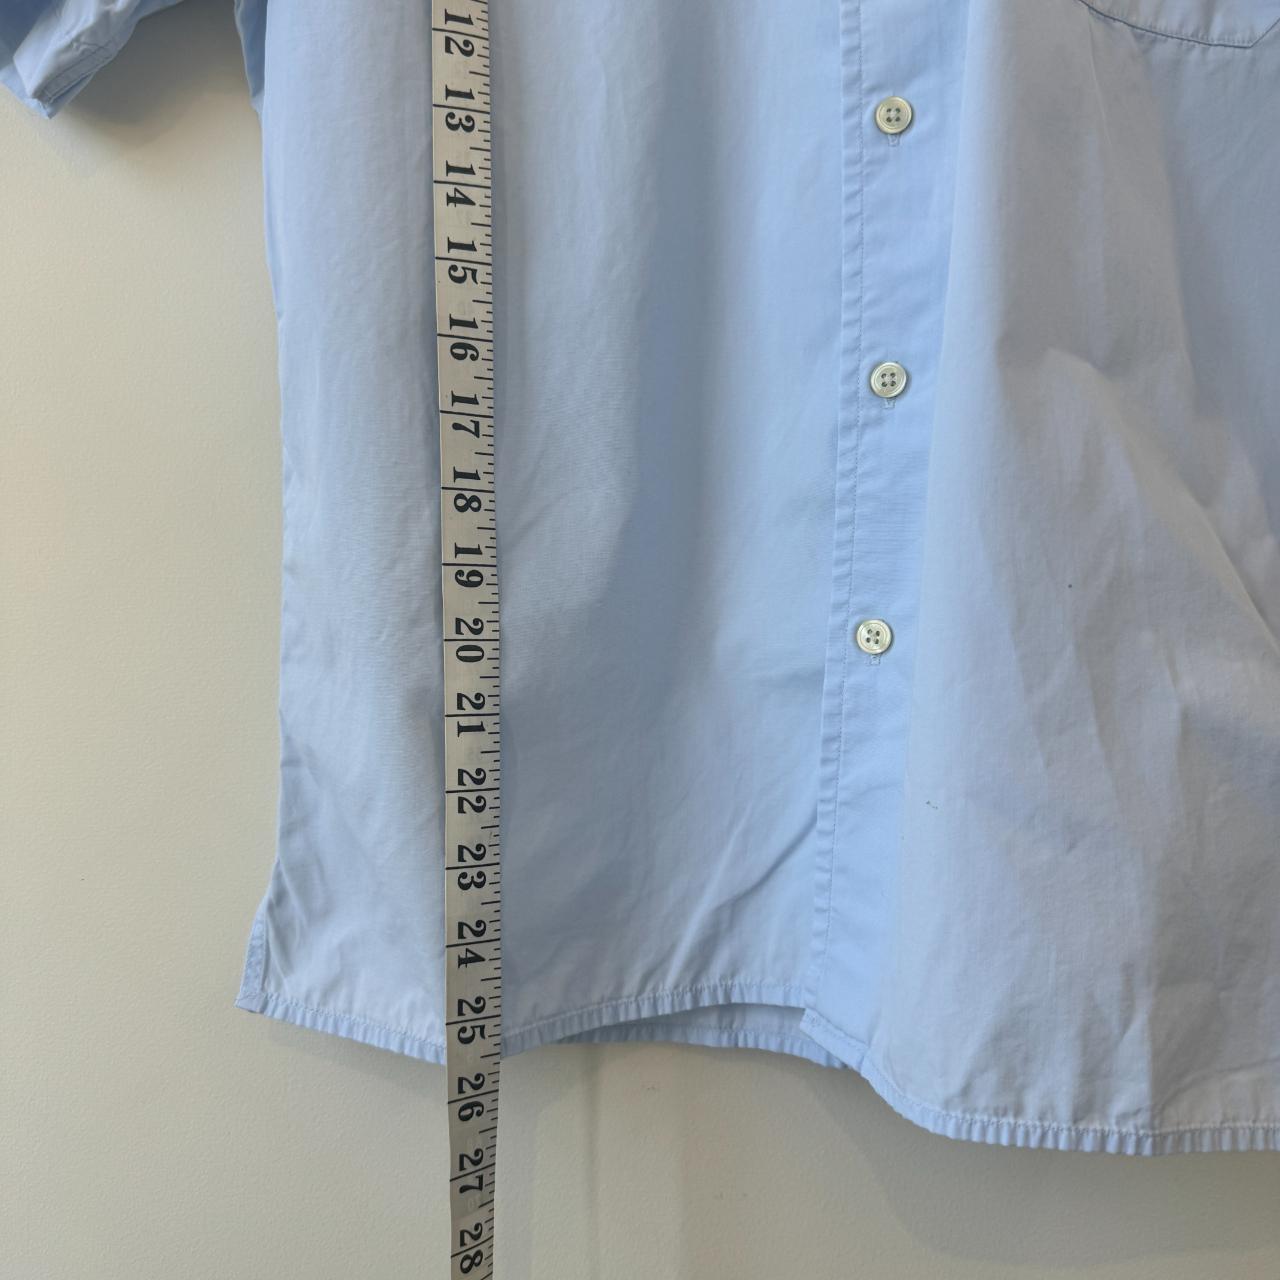 Burberry Short Sleeve Shirt Button Up Size Medium... - Depop